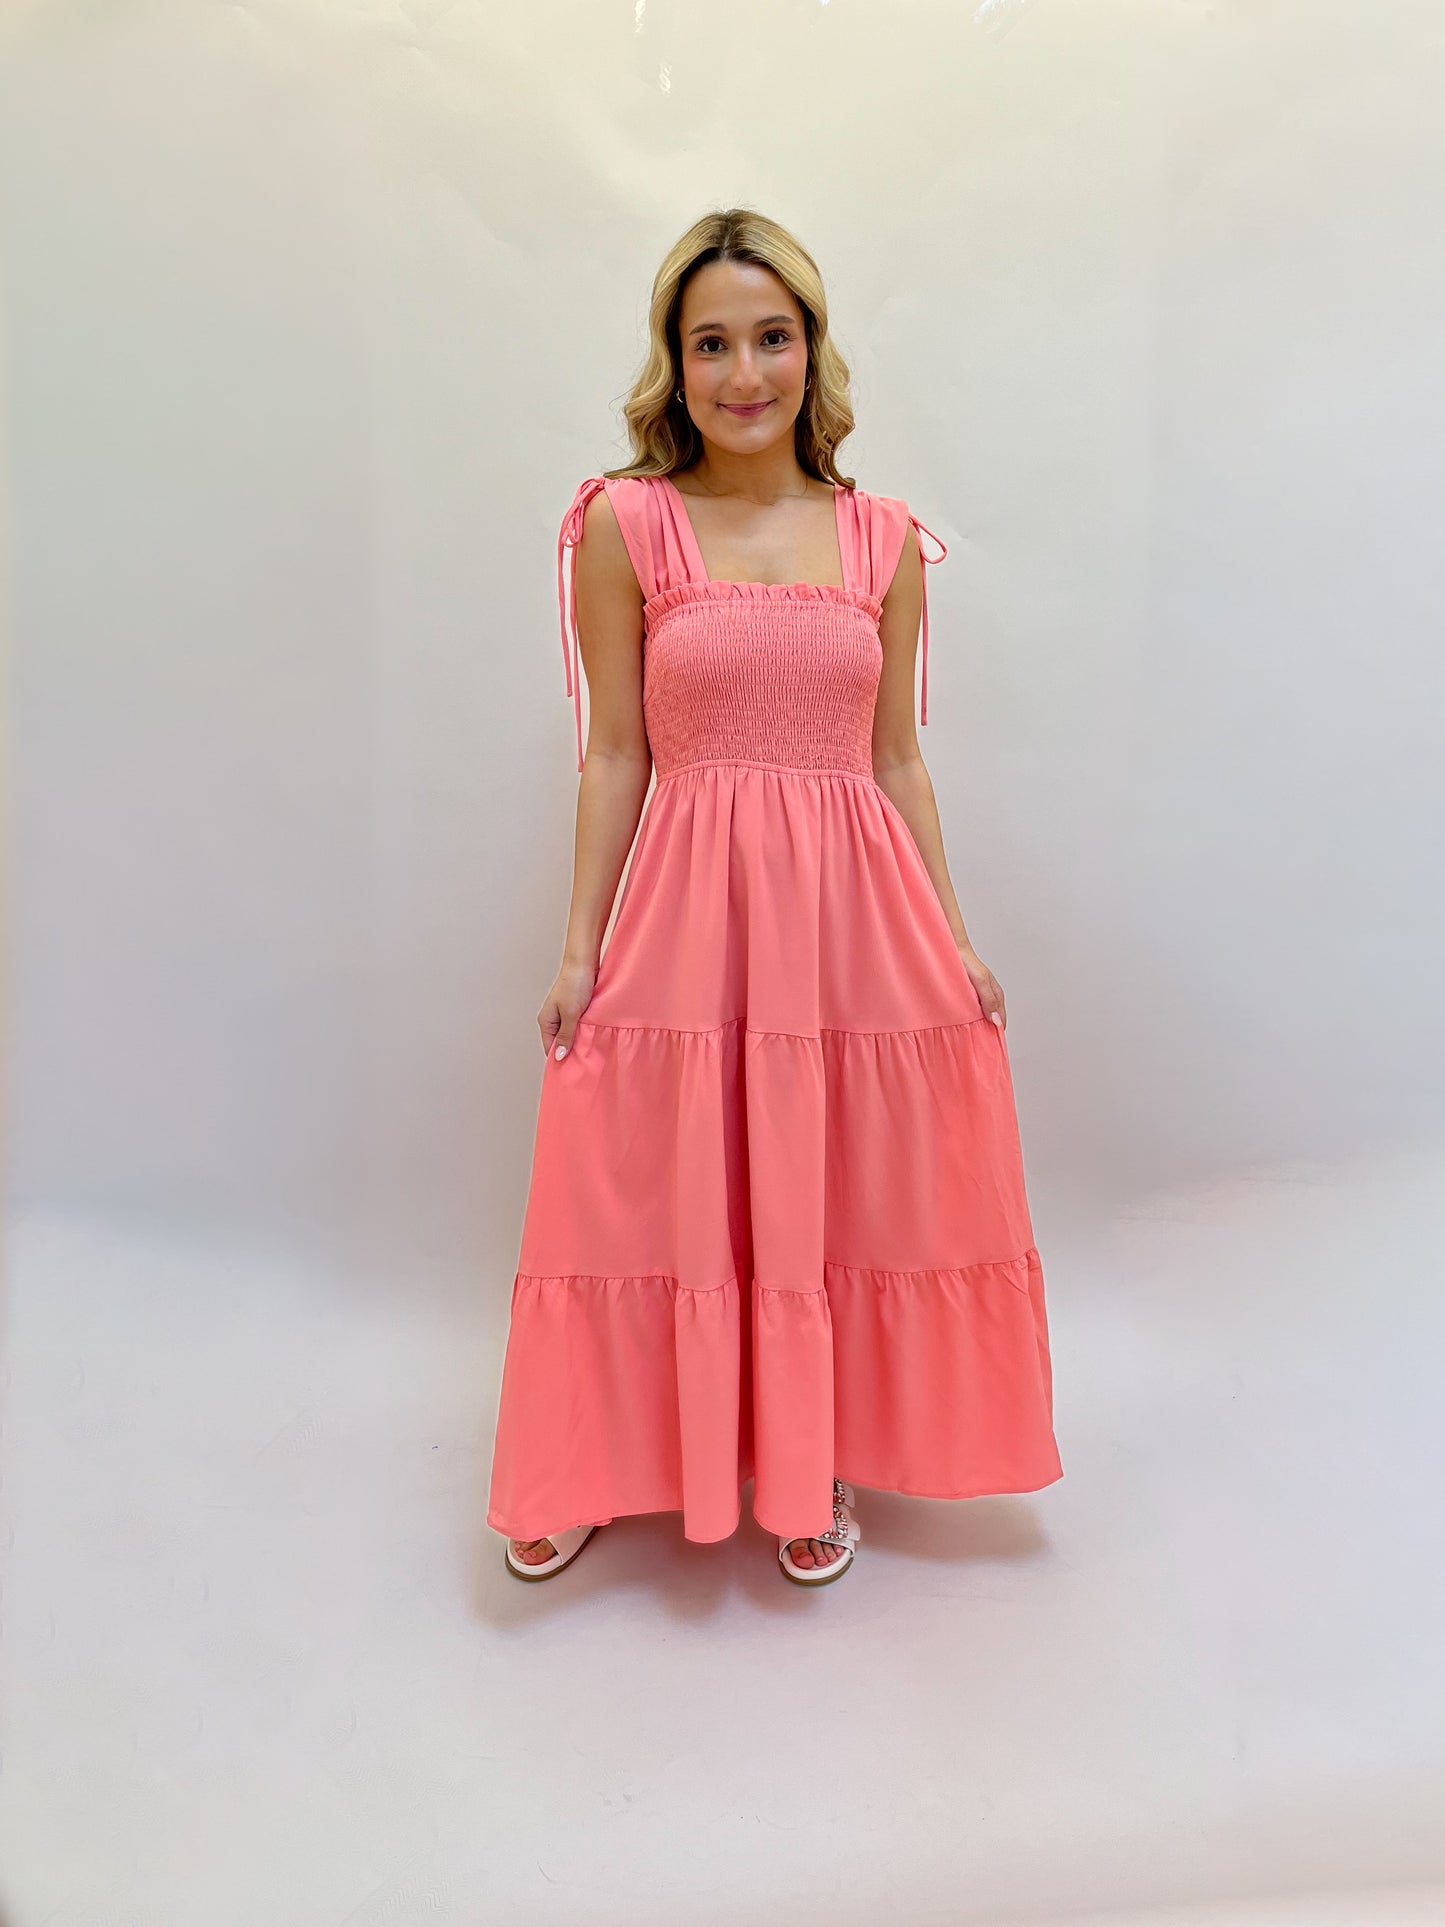 Summertime Heat Dress(pink)